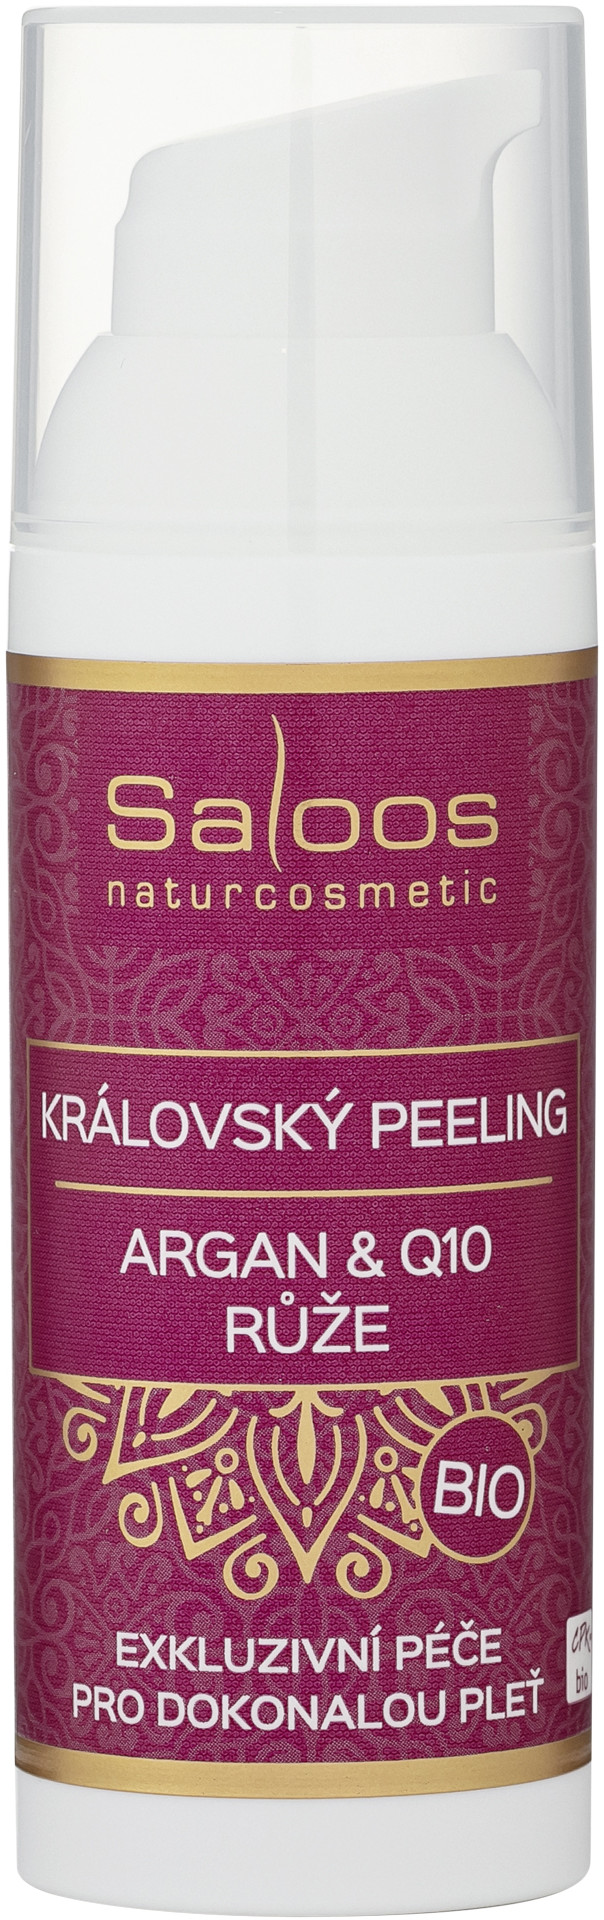 Saloos Bio Royal Peeling Argan & Q10 & Rose 20ml